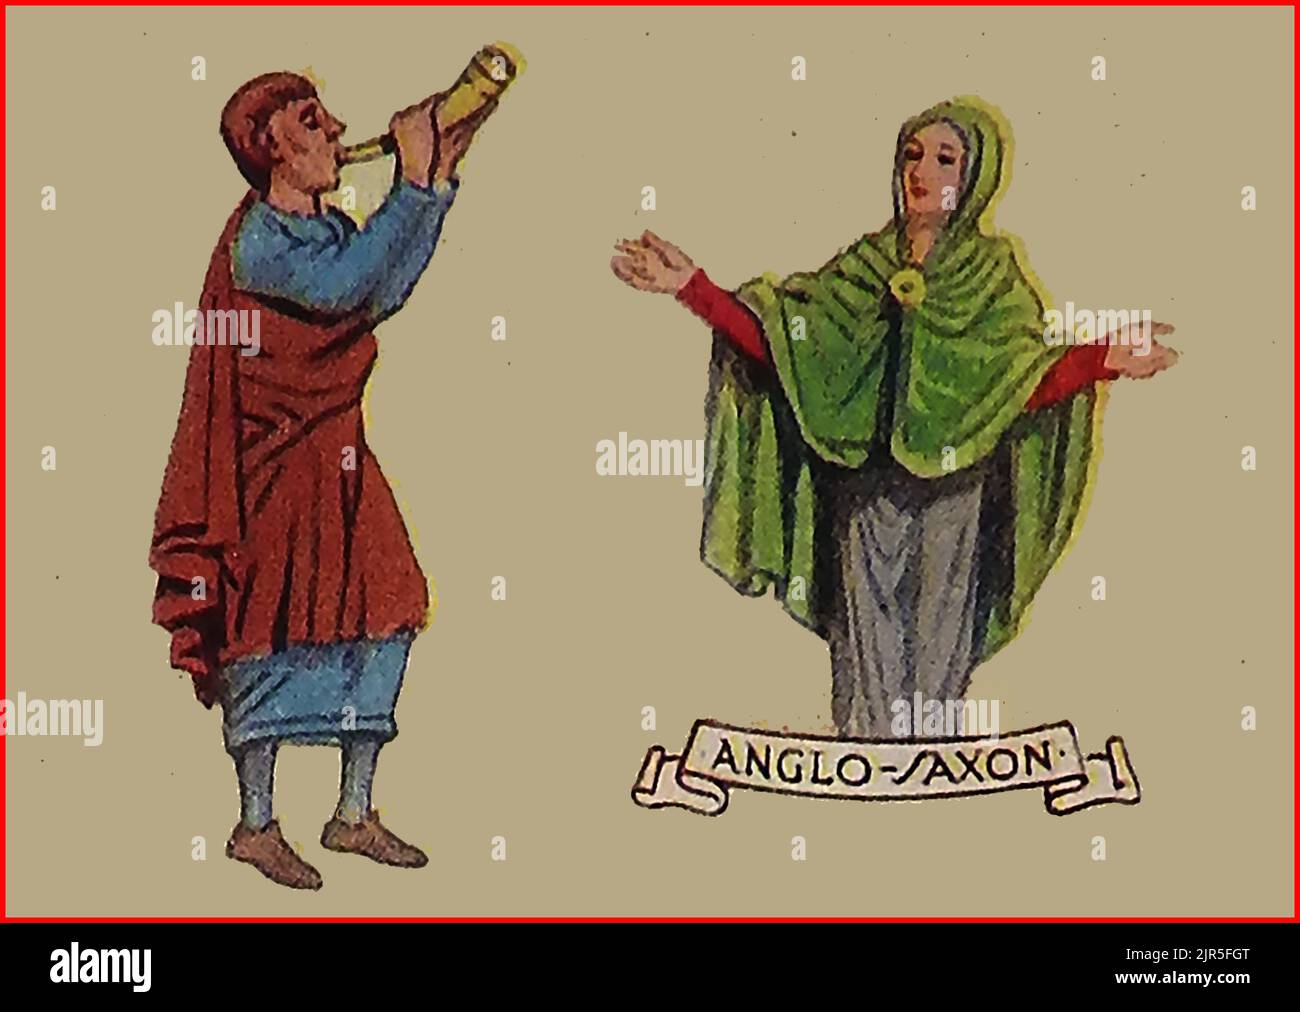 MODA IN GRAN BRETAGNA - una vecchia immagine colorata che mostra abiti tipici in epoca anglosassone. Foto Stock